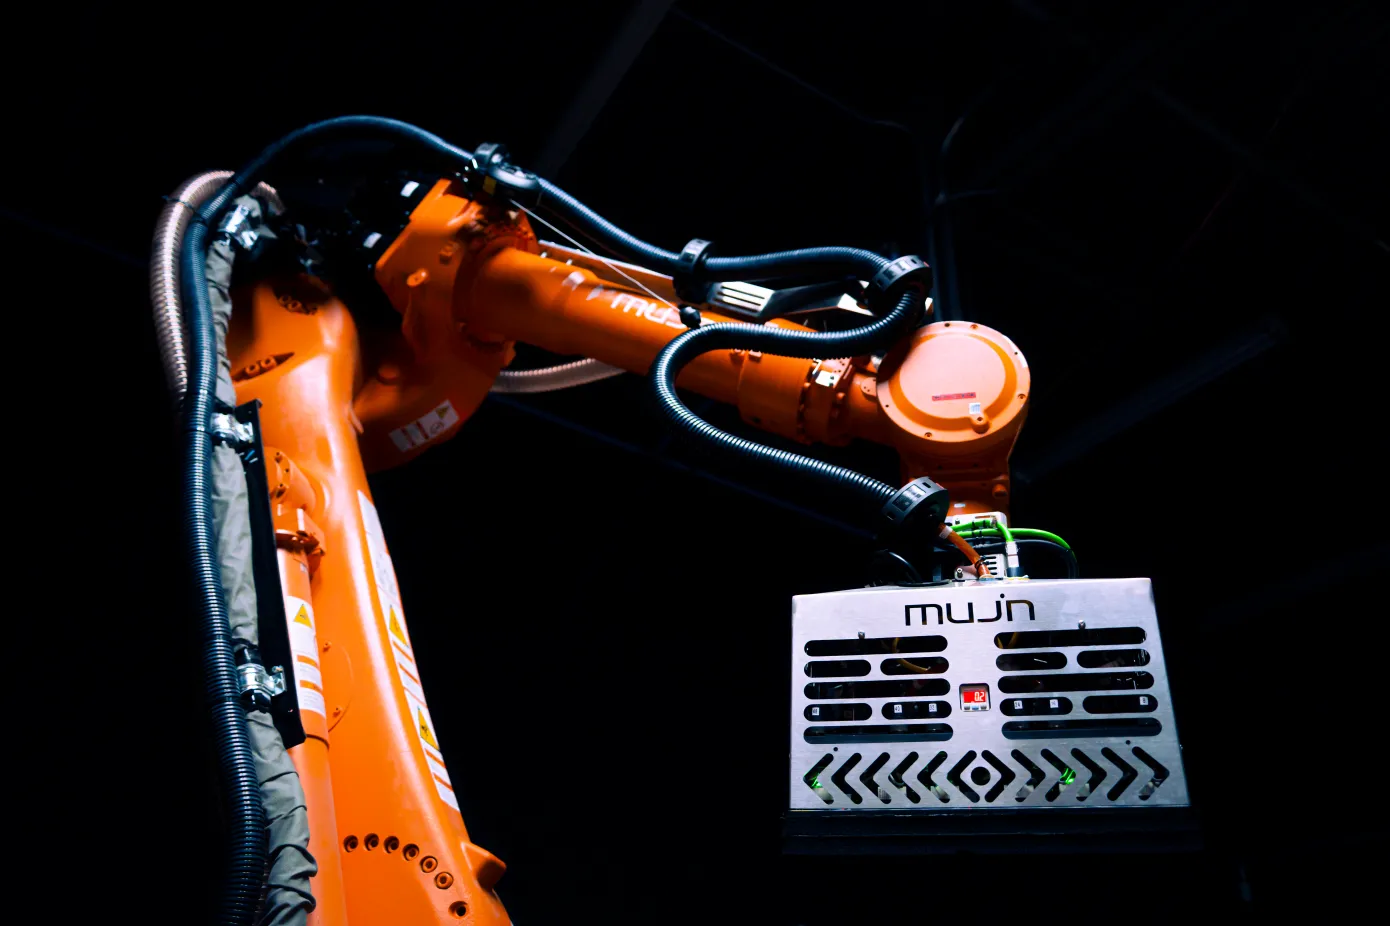 Robotsoftwareudvikleren Mujin har rejst 85 mio. dollars i finansiering